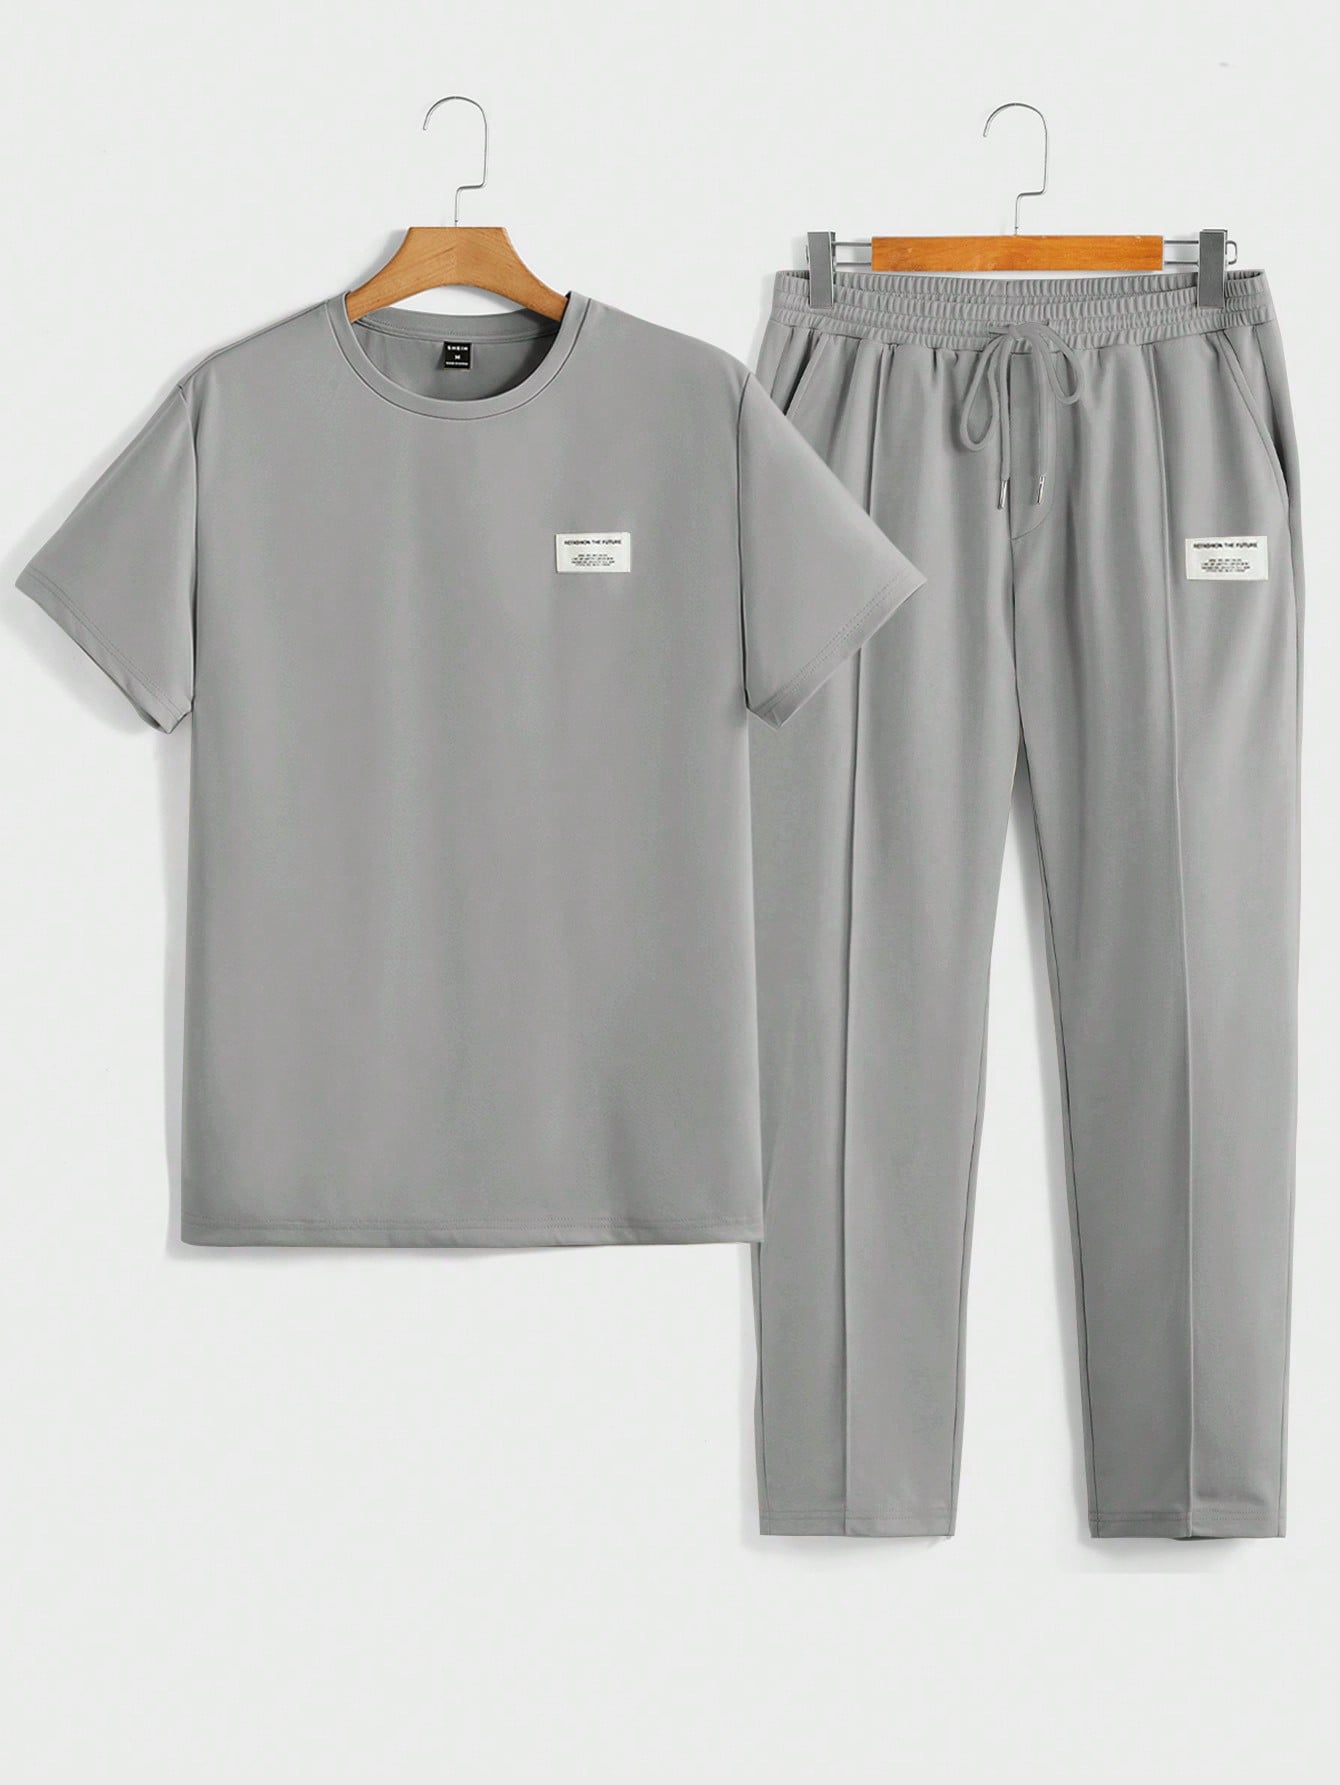 цена Мужская футболка с короткими рукавами и трикотажными повседневными брюками Manfinity Homme с надписью и нашивкой, серый